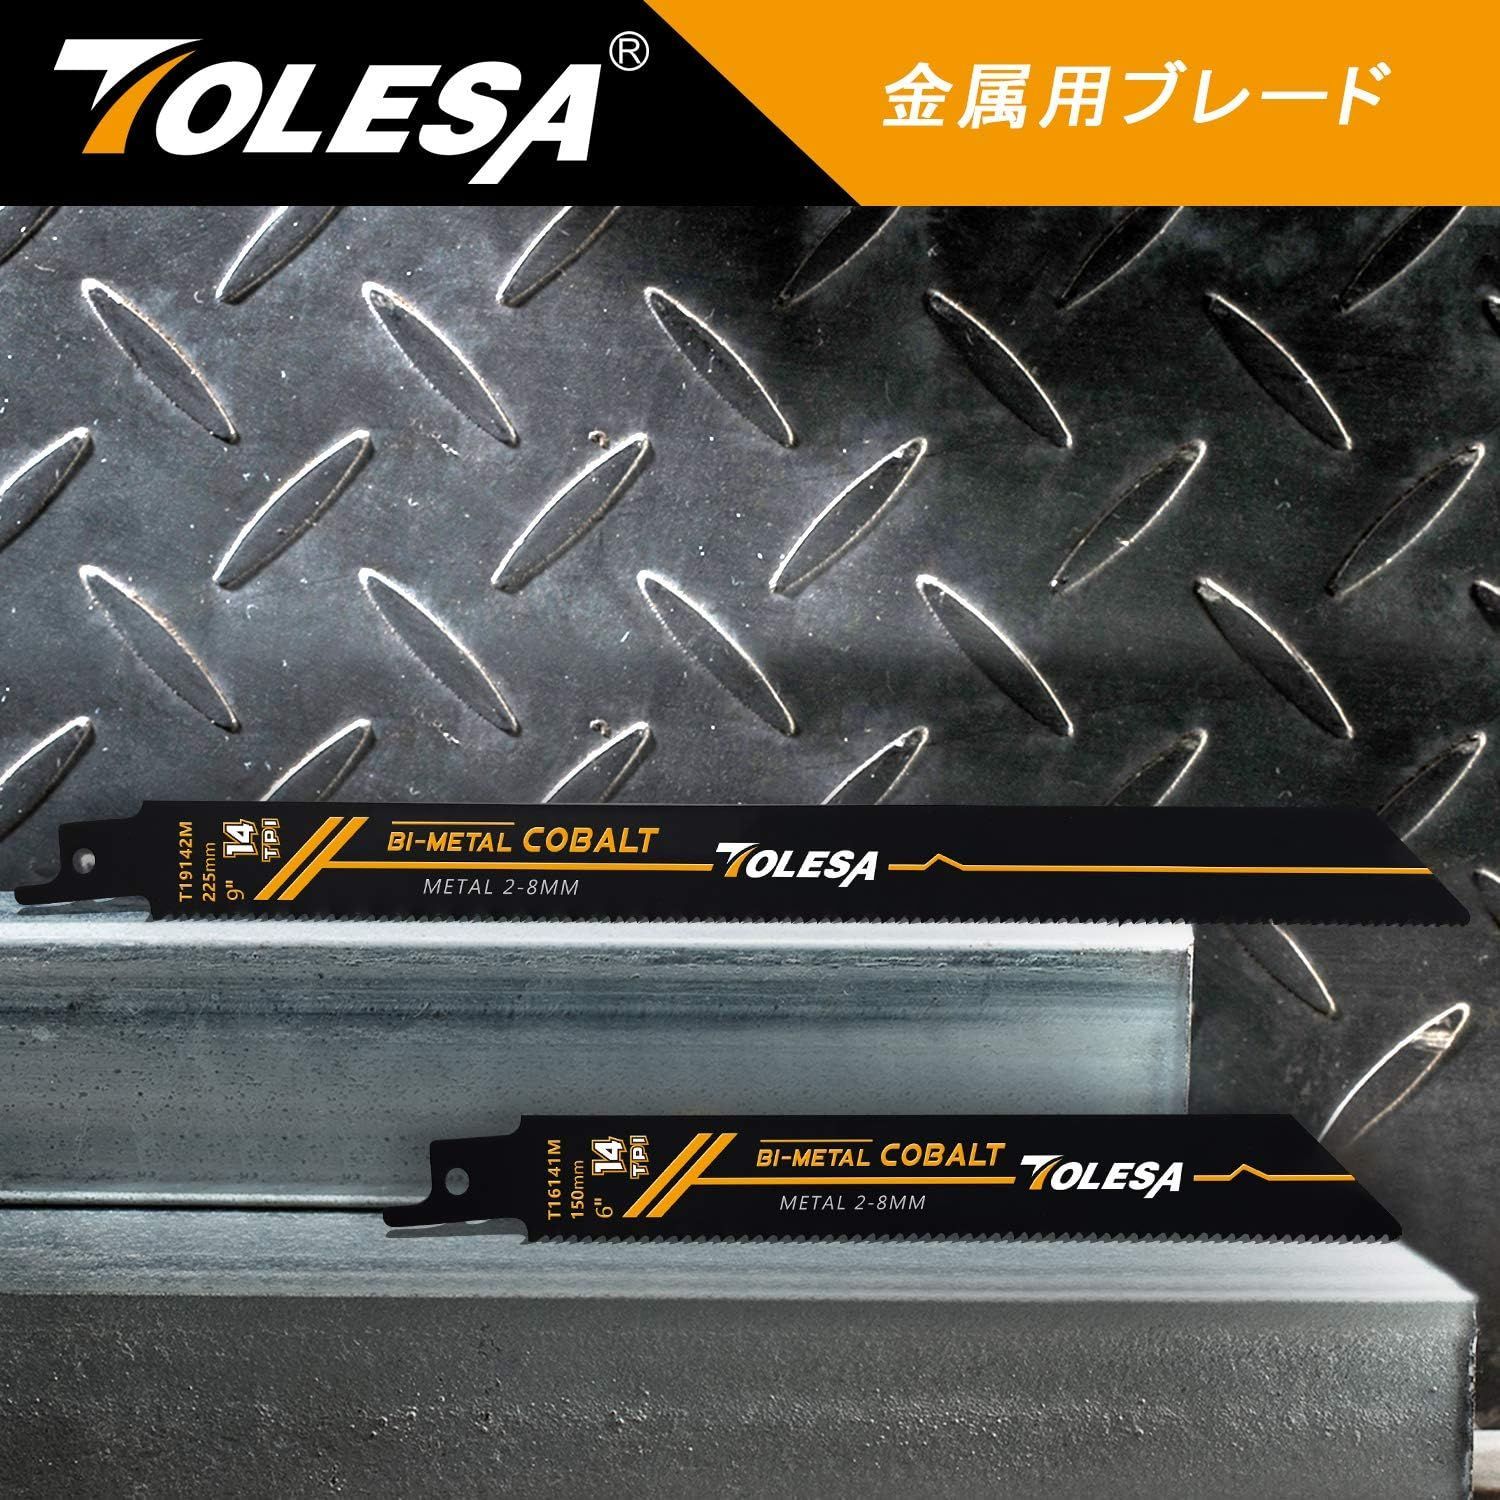 TOLESA レシプロソー替刃 14山 150mm バイメタル コバルト 金属用 セーバーソー替刃 5枚入れ